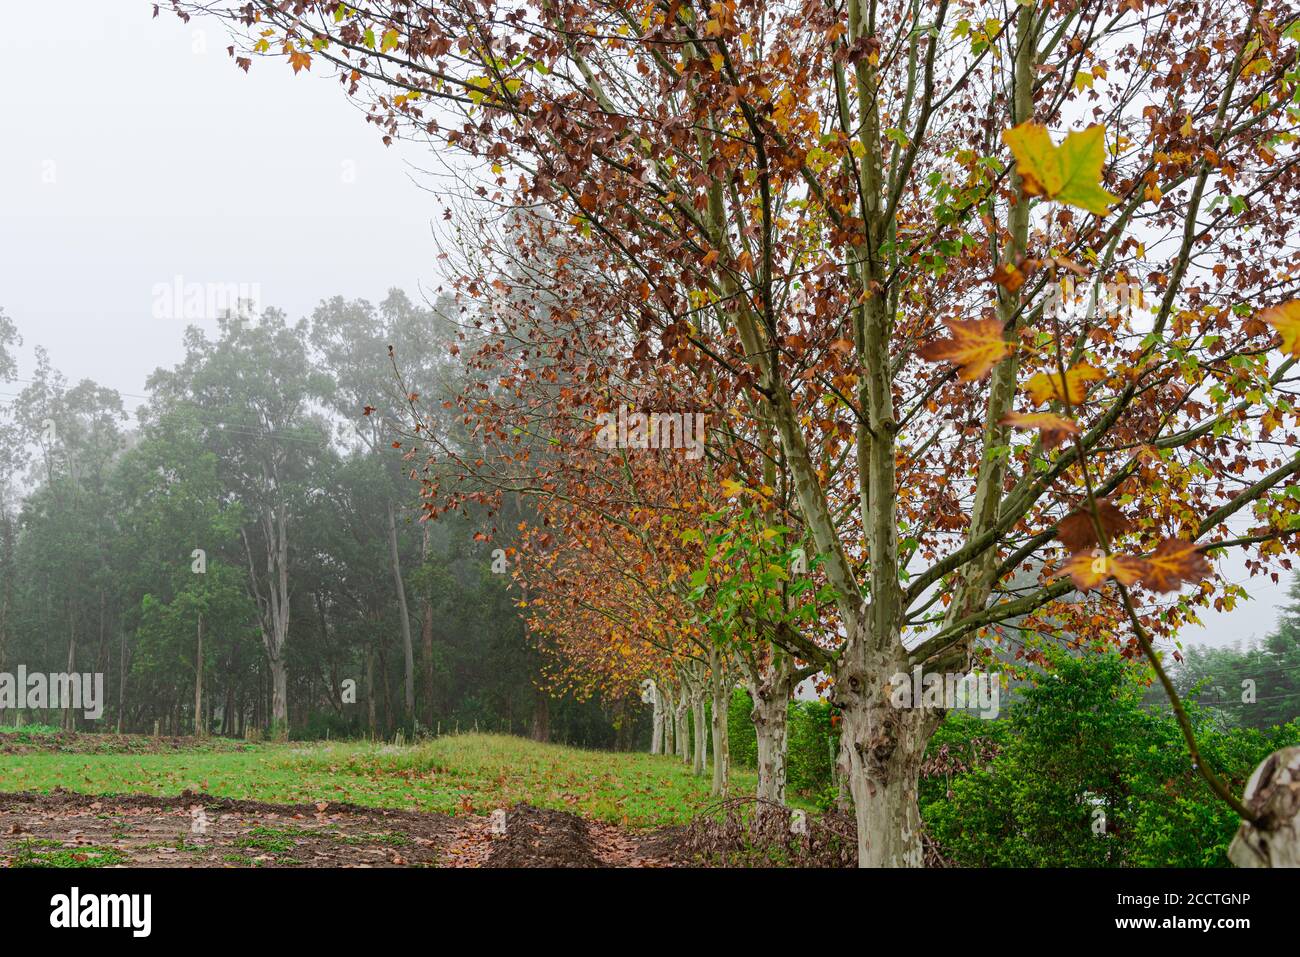 Arce (Platanus × hispanica). Amanecer con niebla. Naturaleza y flora. Árbol de hoja caduca grande, que puede alcanzar 35 o 40 metros, con el tronco generalmente s Foto de stock